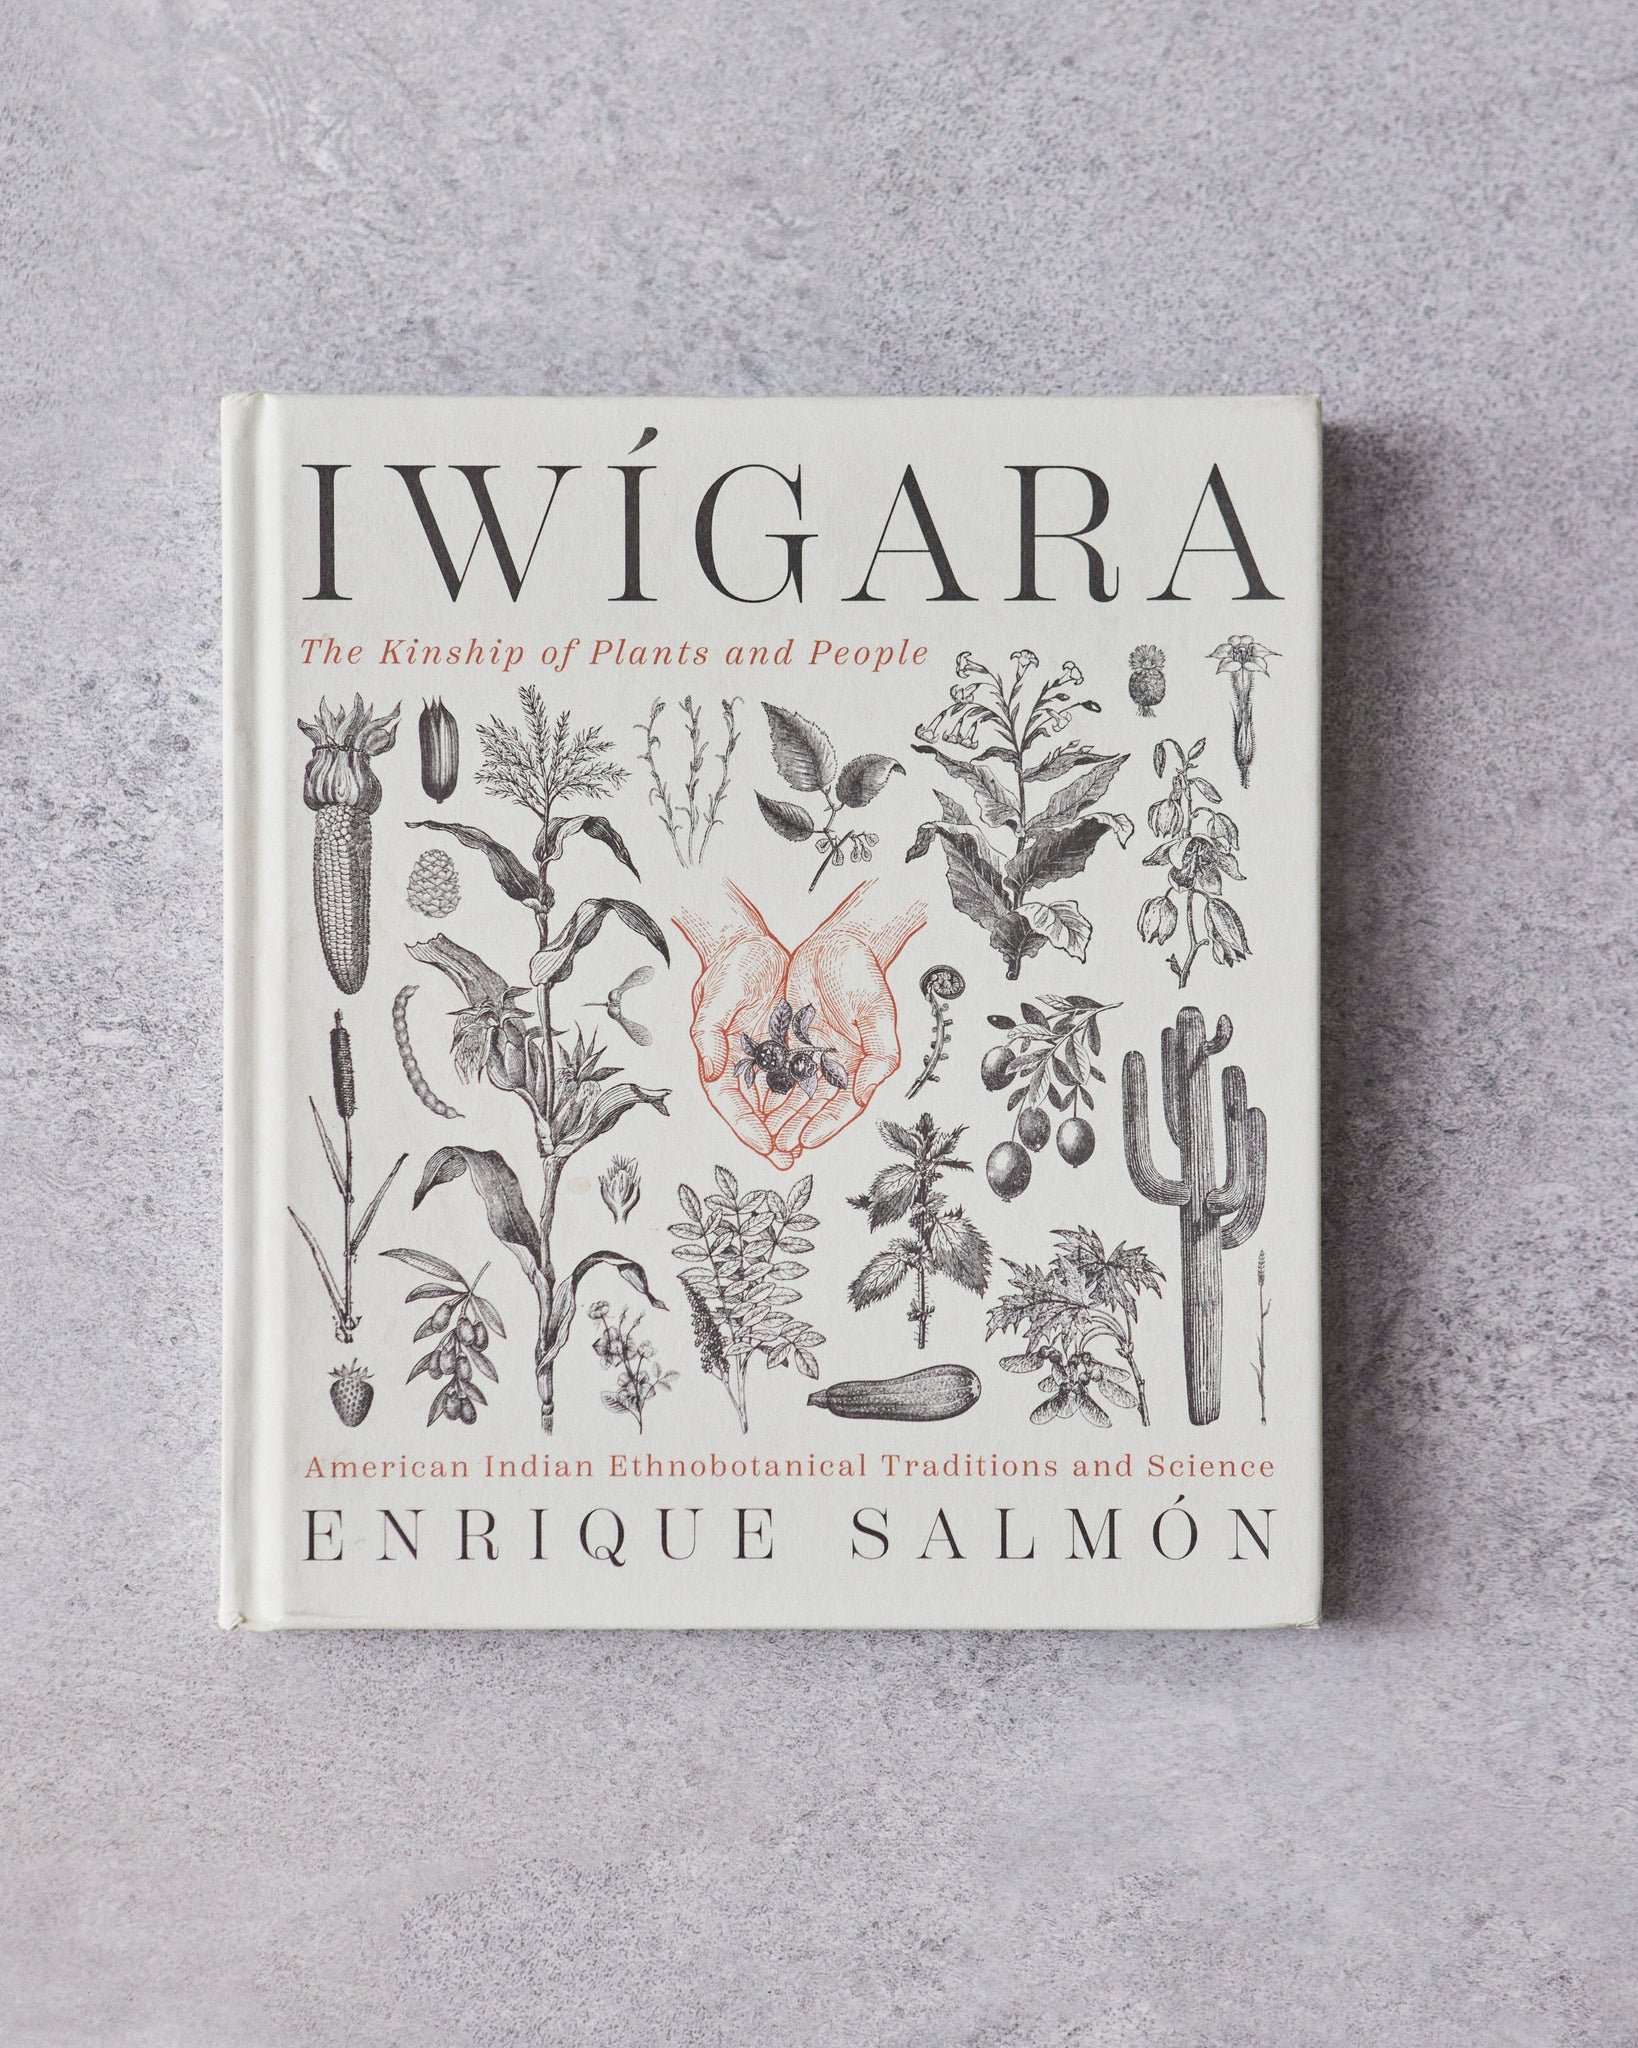 Iwígara by Enrique Salmón